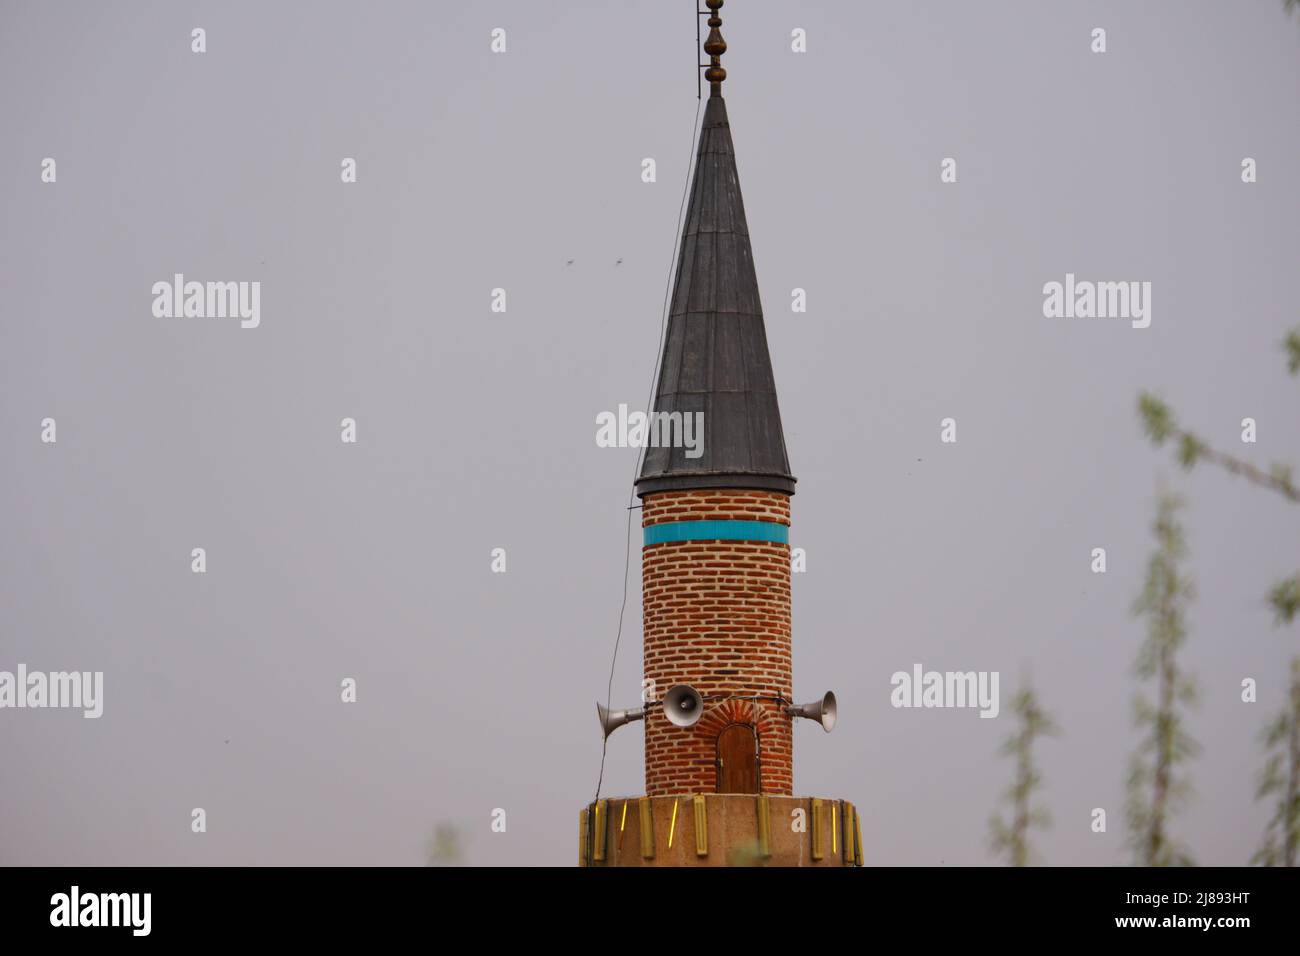 Minaret historique en pierre de style ottoman par temps sombre et nuageux Banque D'Images